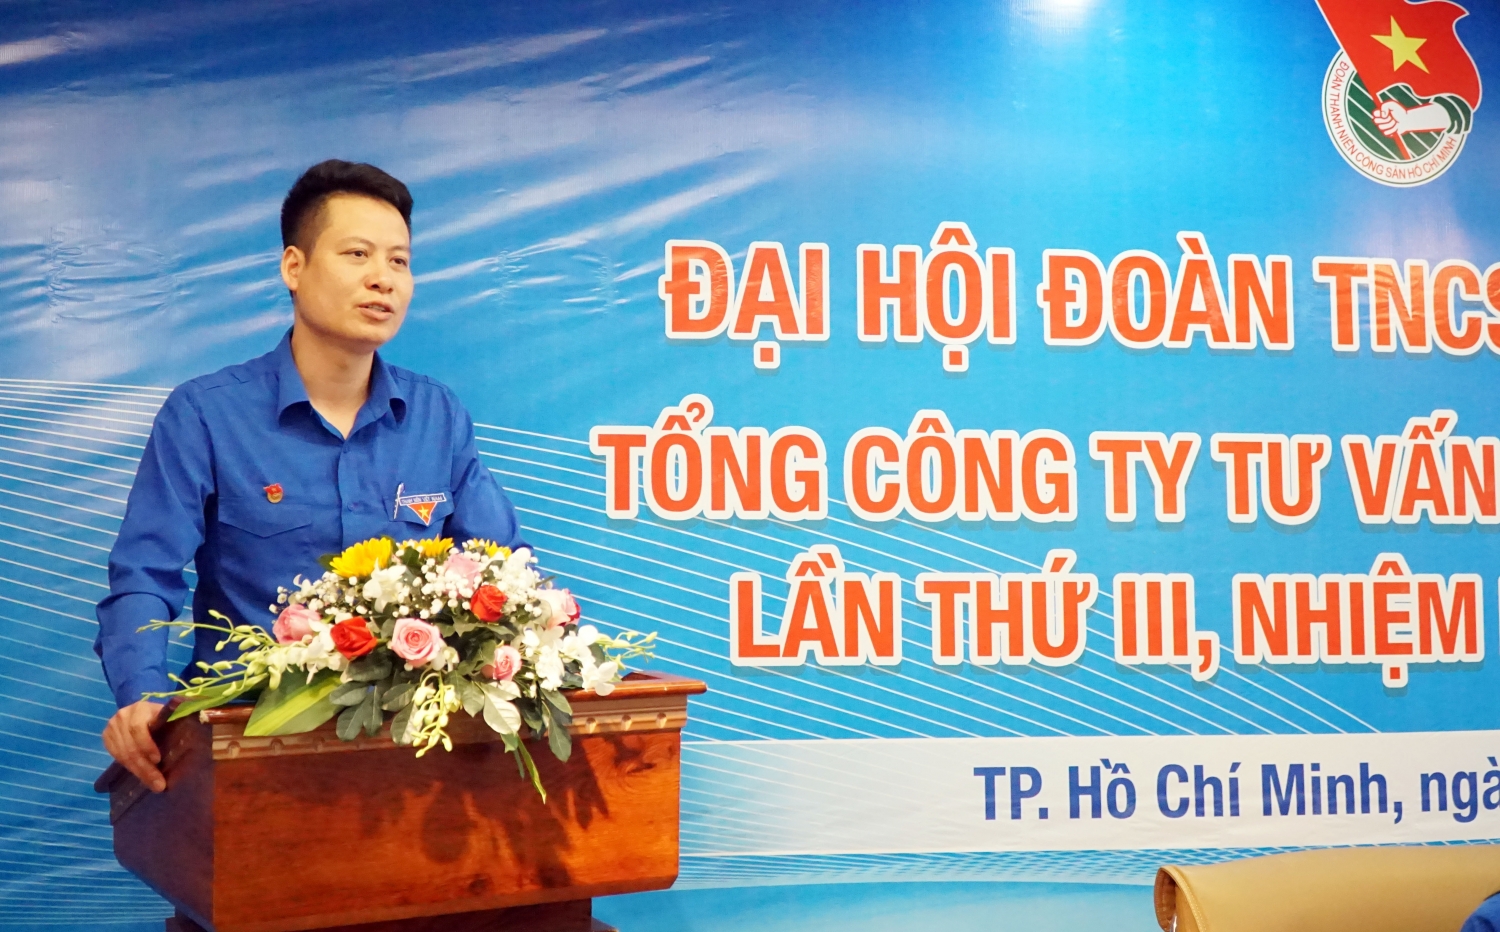 Đồng chí Phan Sỹ Linh phát biểu chỉ đạo tại Đại hội